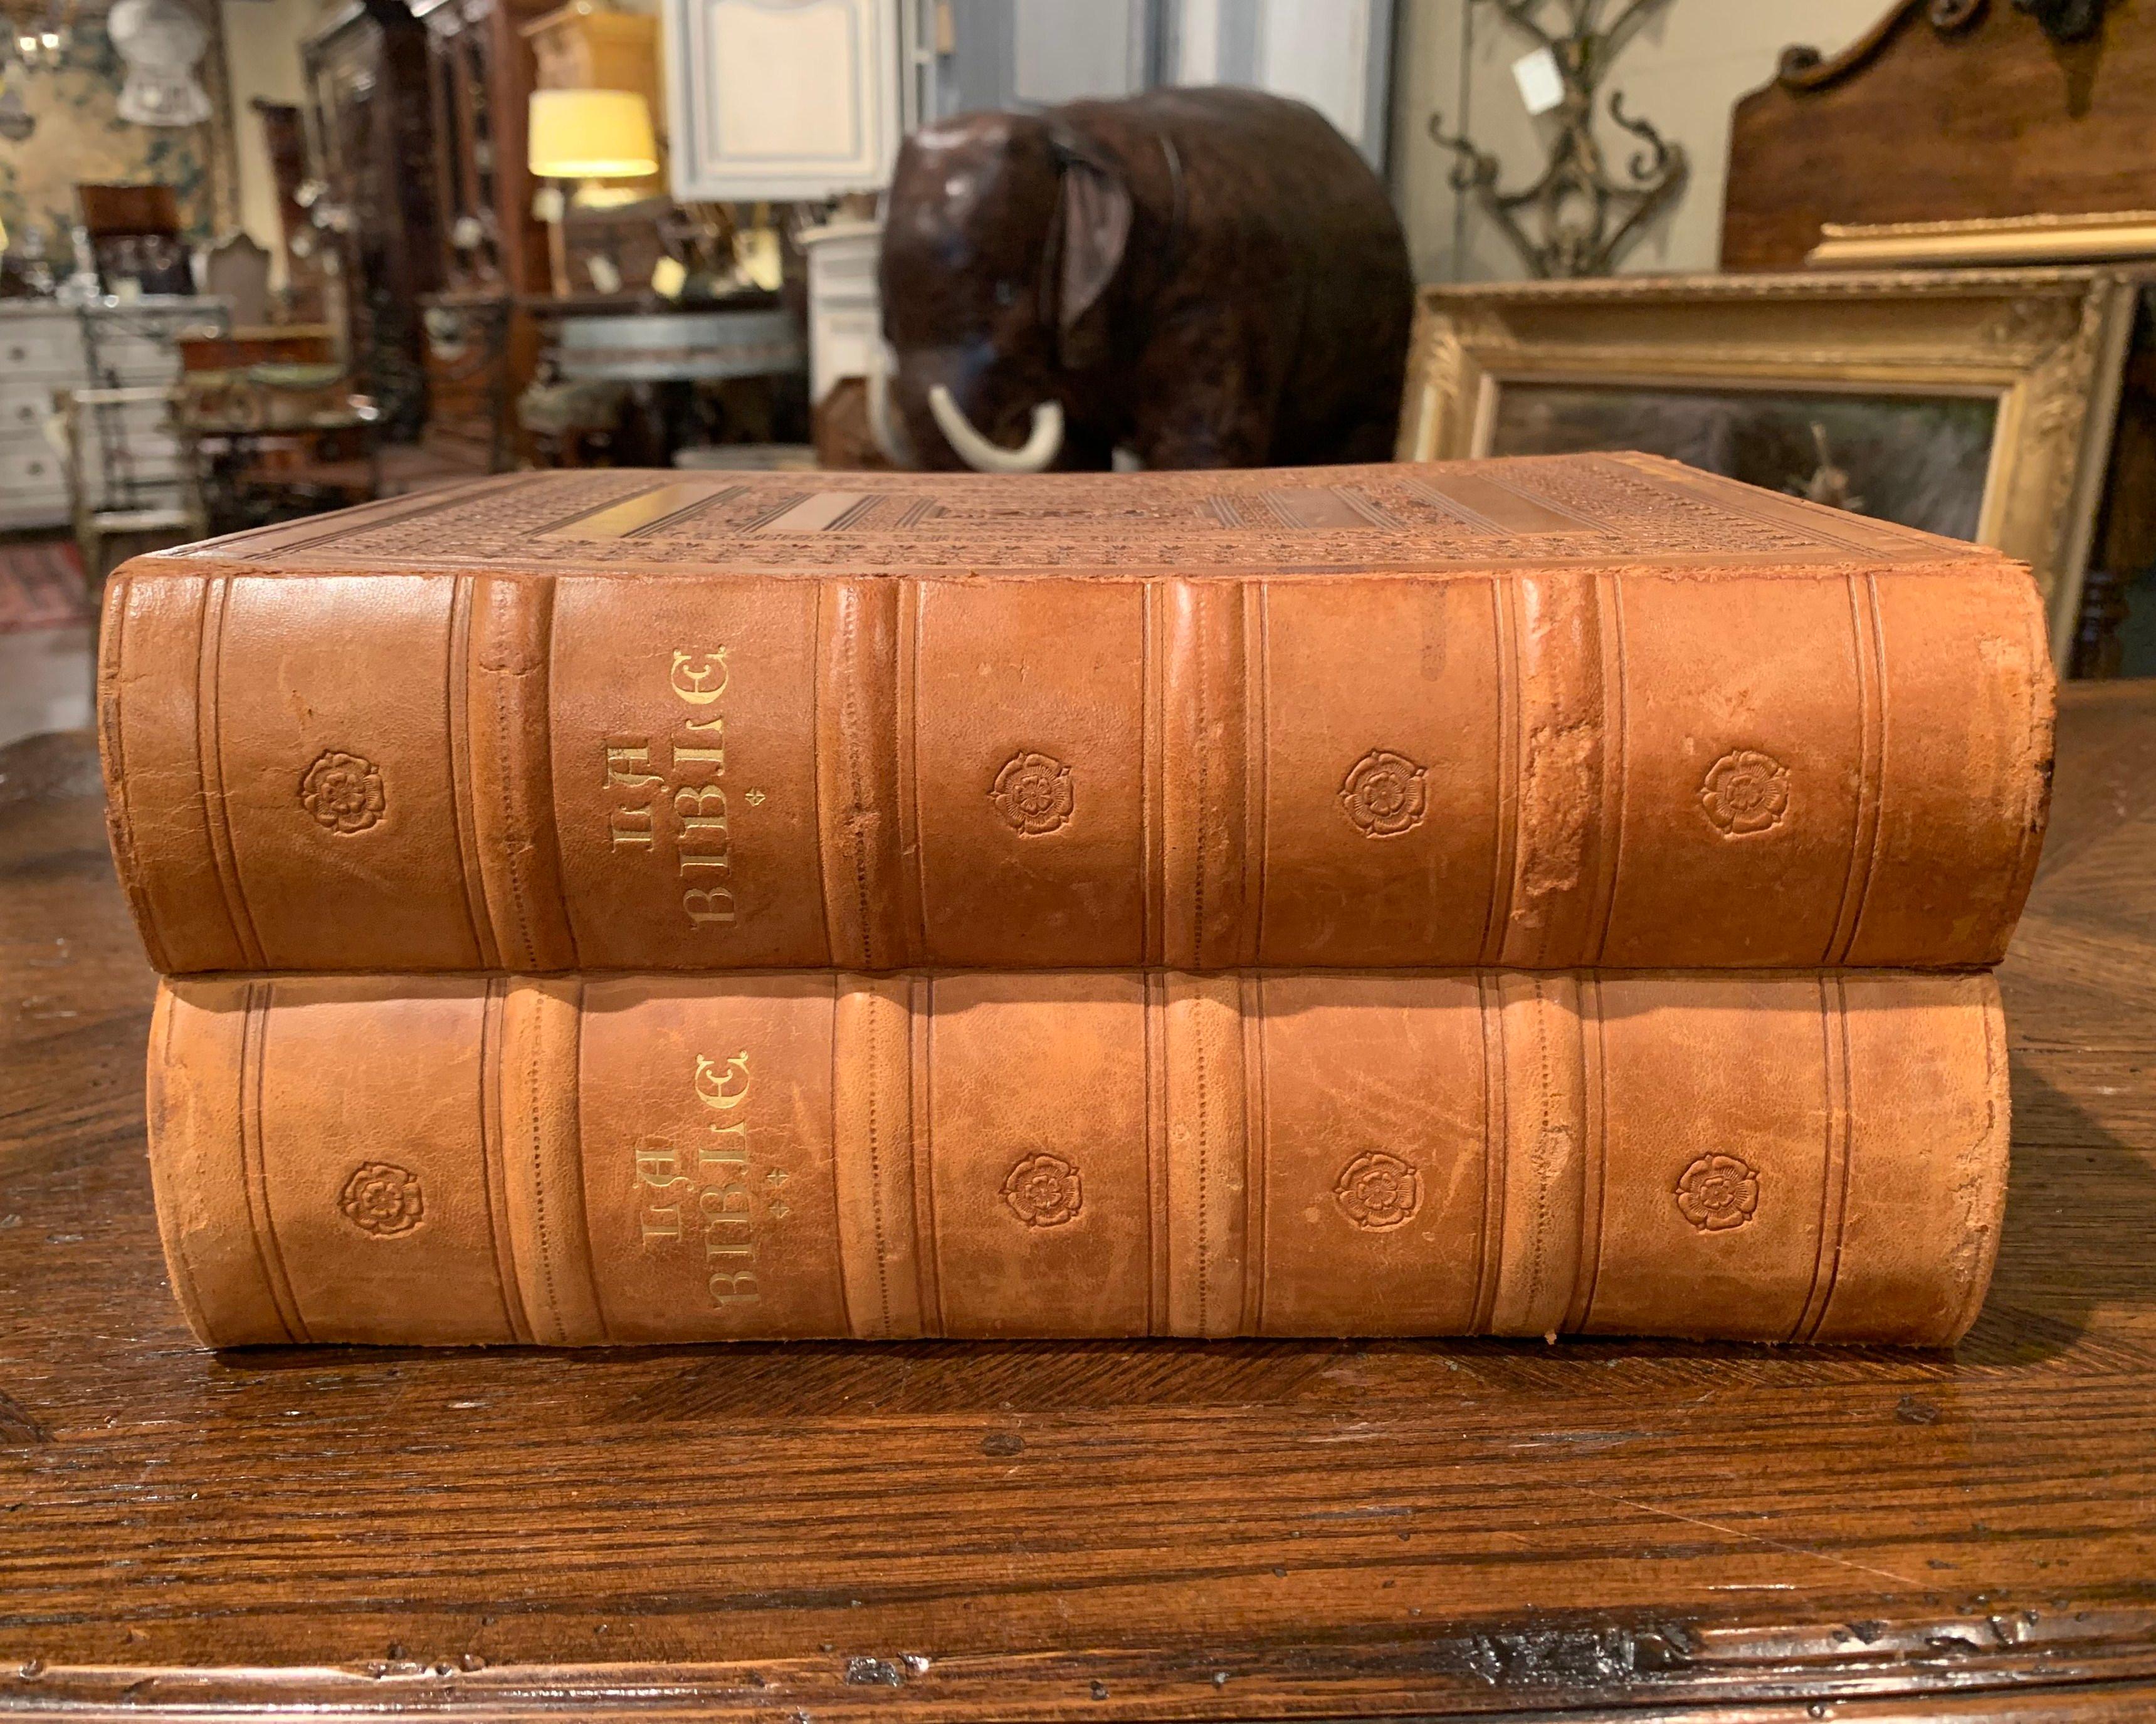 Diese beiden heiligen Bibeln mit braunem Ledereinband wurden 1953 in Marseille, Frankreich, gedruckt. Jedes der beiden Bücher enthält das Neue und das Alte Testament, übersetzt von Robert Tamisier und Francois Amiot. Beide religiösen Gegenstände